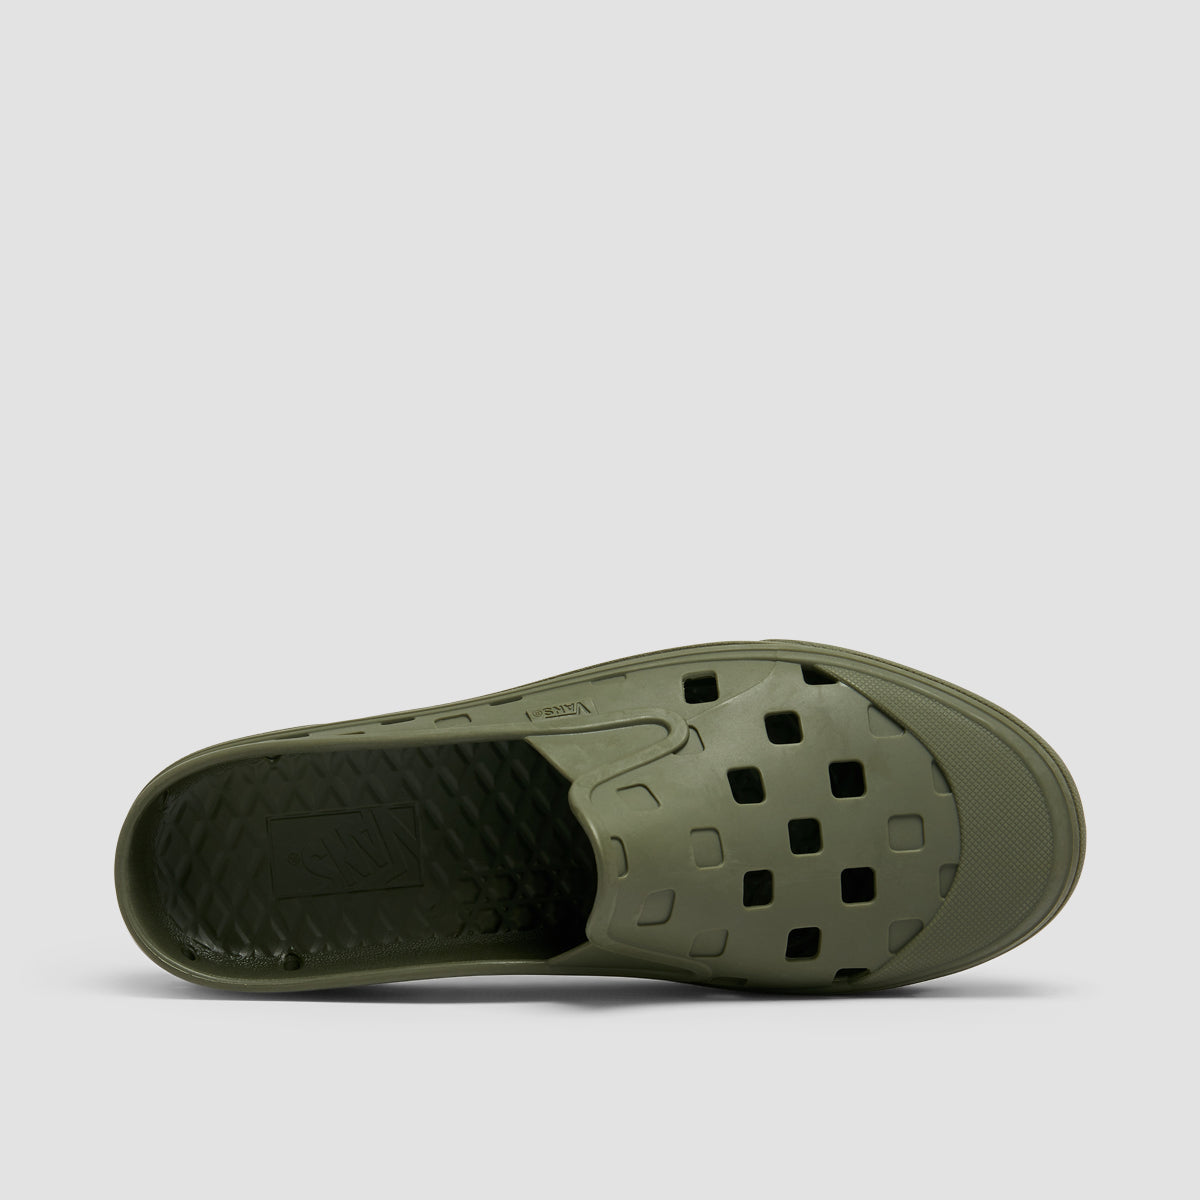 Vans MTE Slip-On Mule TRK Shoes - Grape Leaf